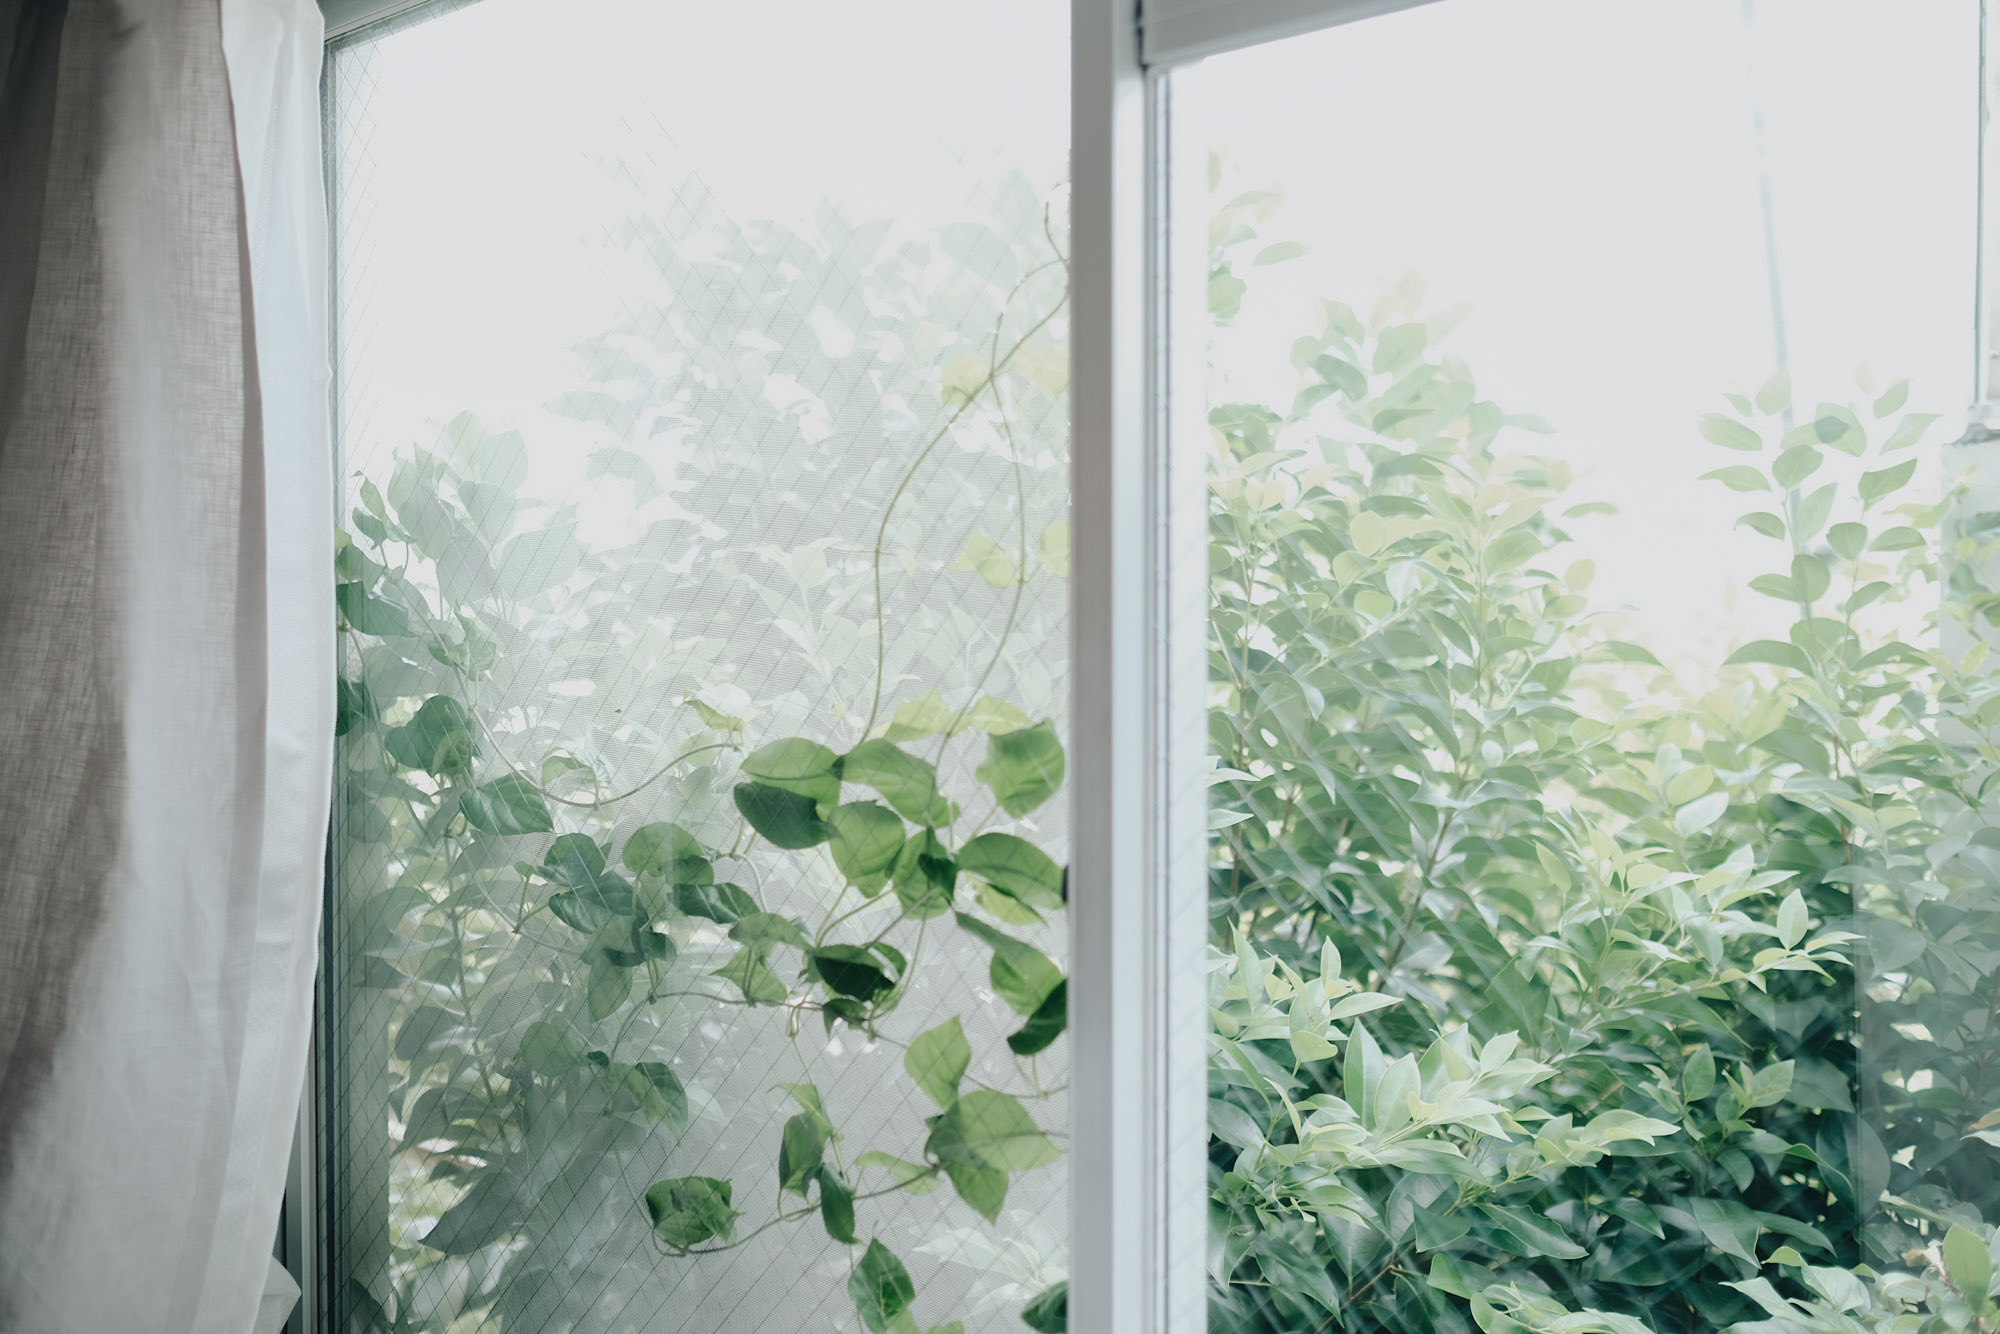 こちらのお部屋も、窓が2つあり明るいです。「夏になったら植物がぐんぐん伸びてきて、デスクに座っていても緑が目に入るのが気に入ってます」